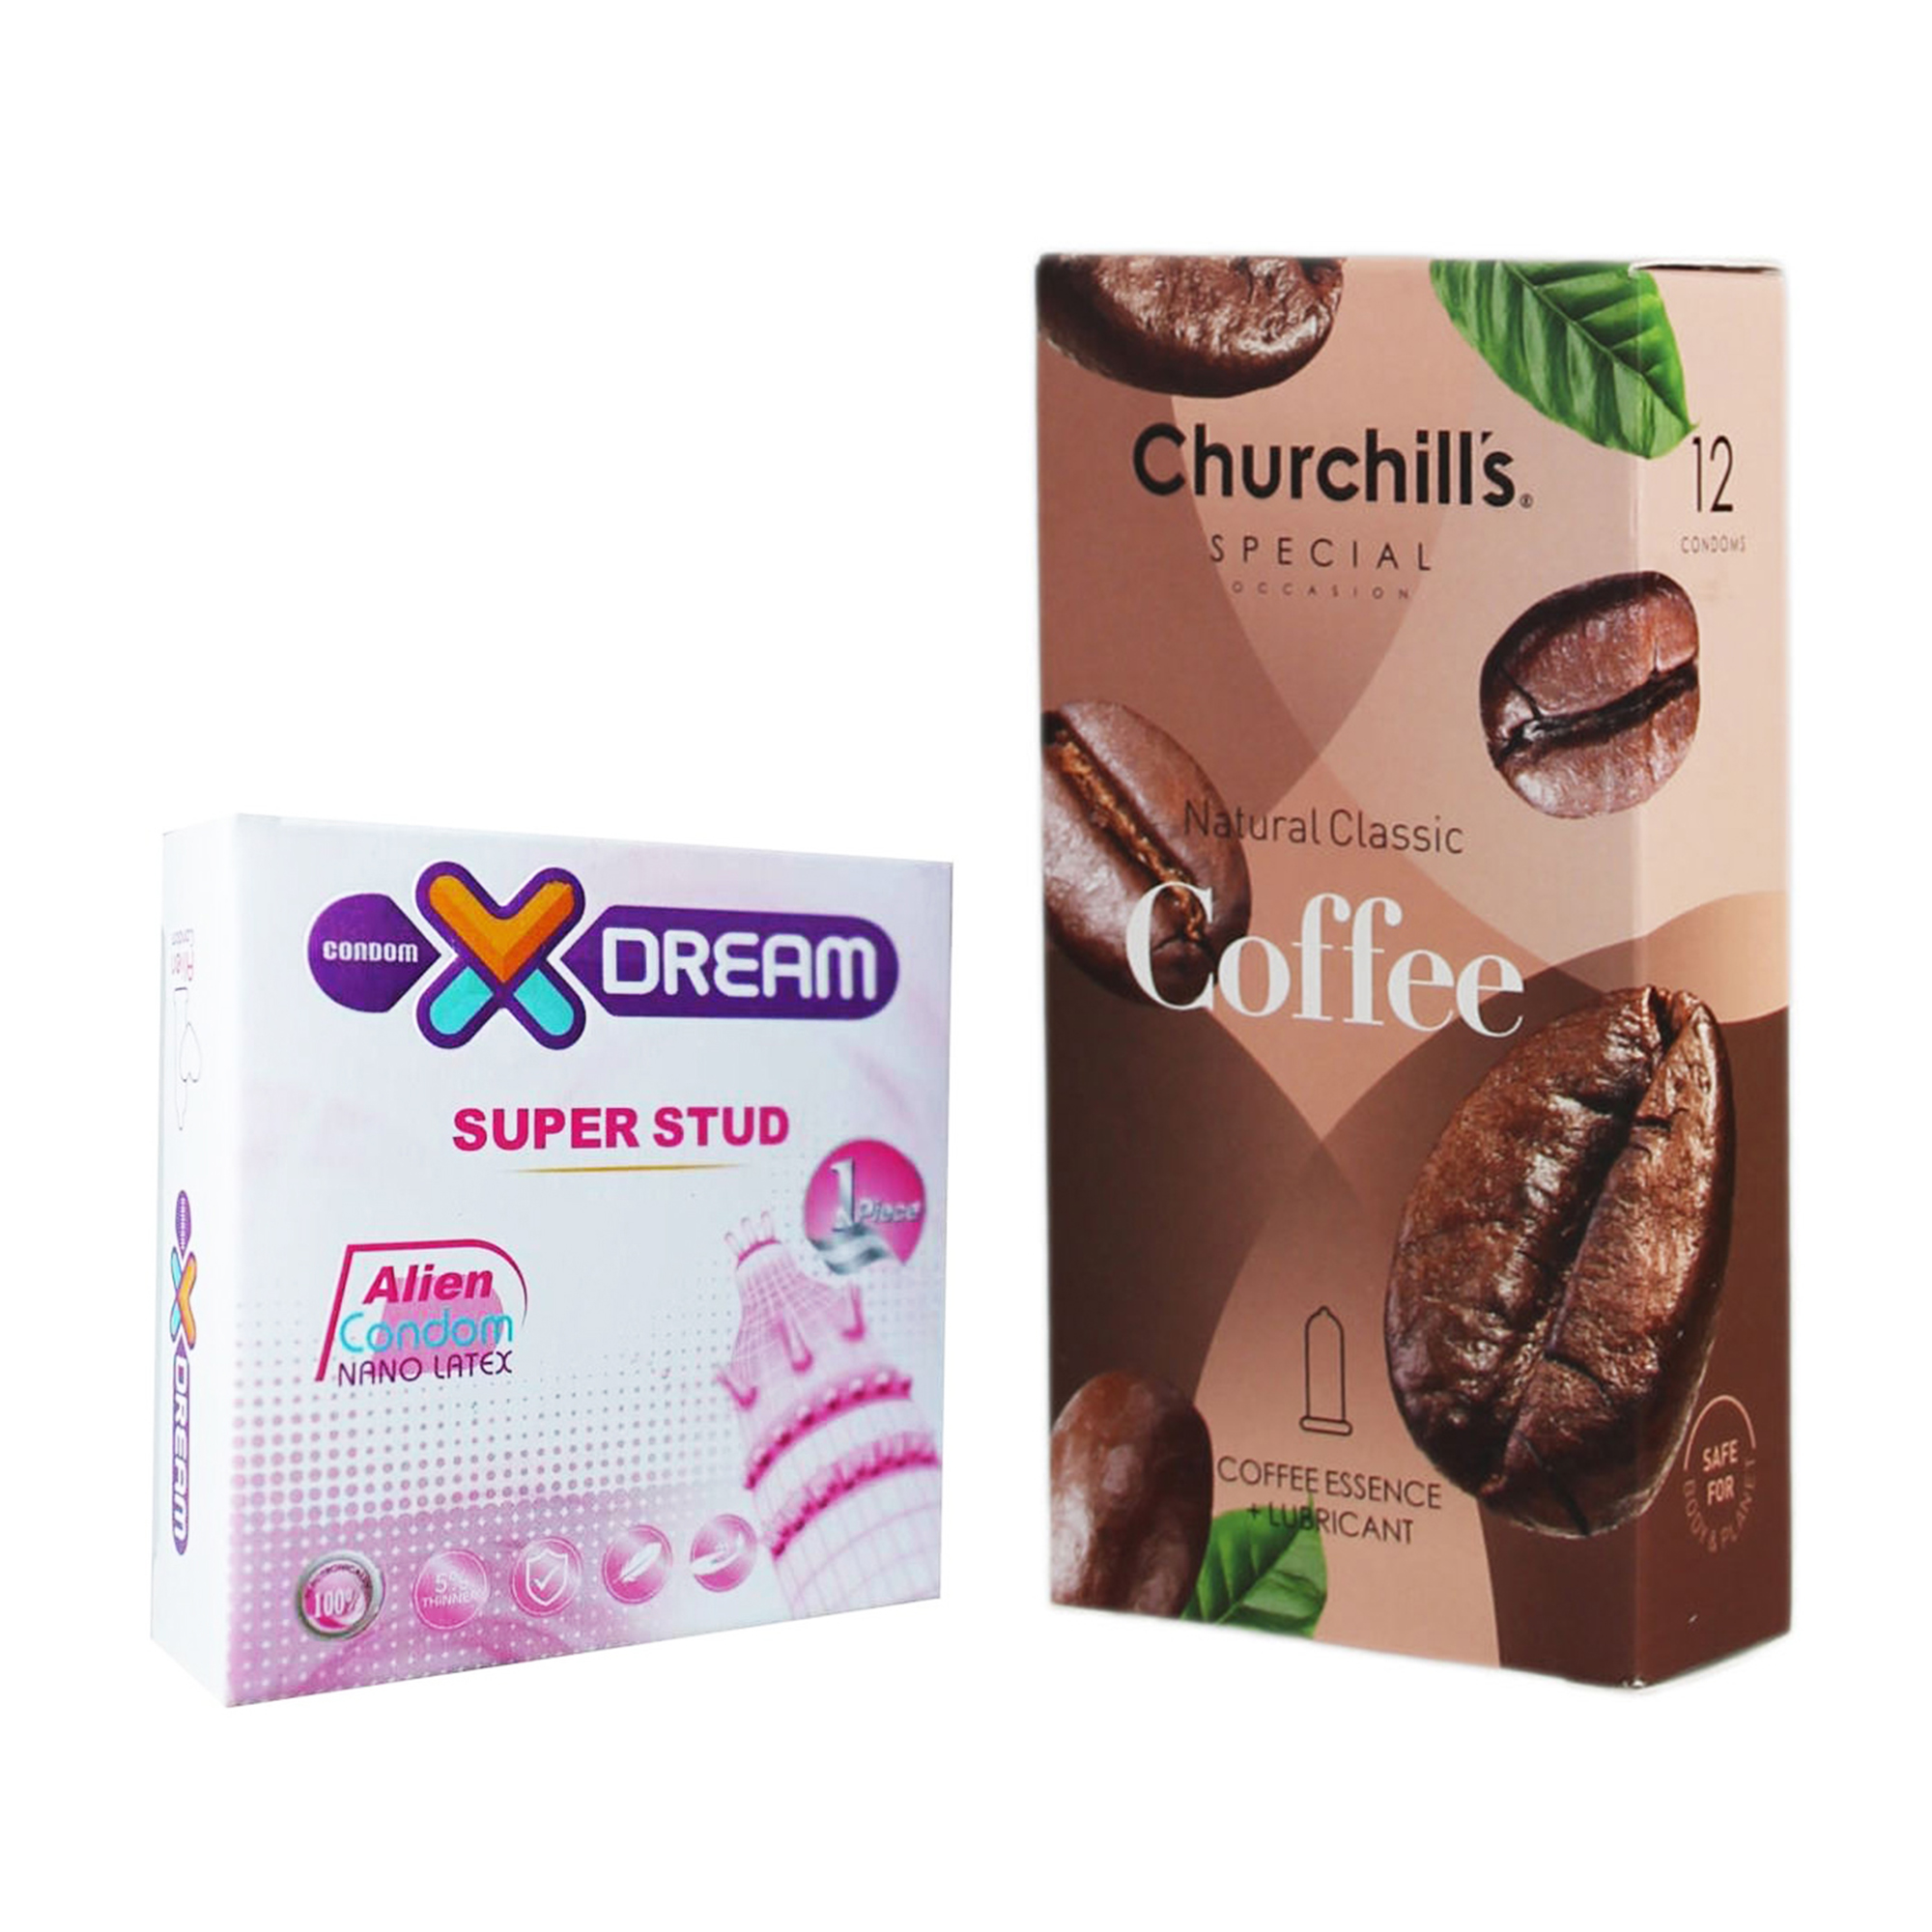 کاندوم چرچیلز مدل Coffee بسته 12 عددی به همراه کاندوم ایکس دریم مدل Super Stud